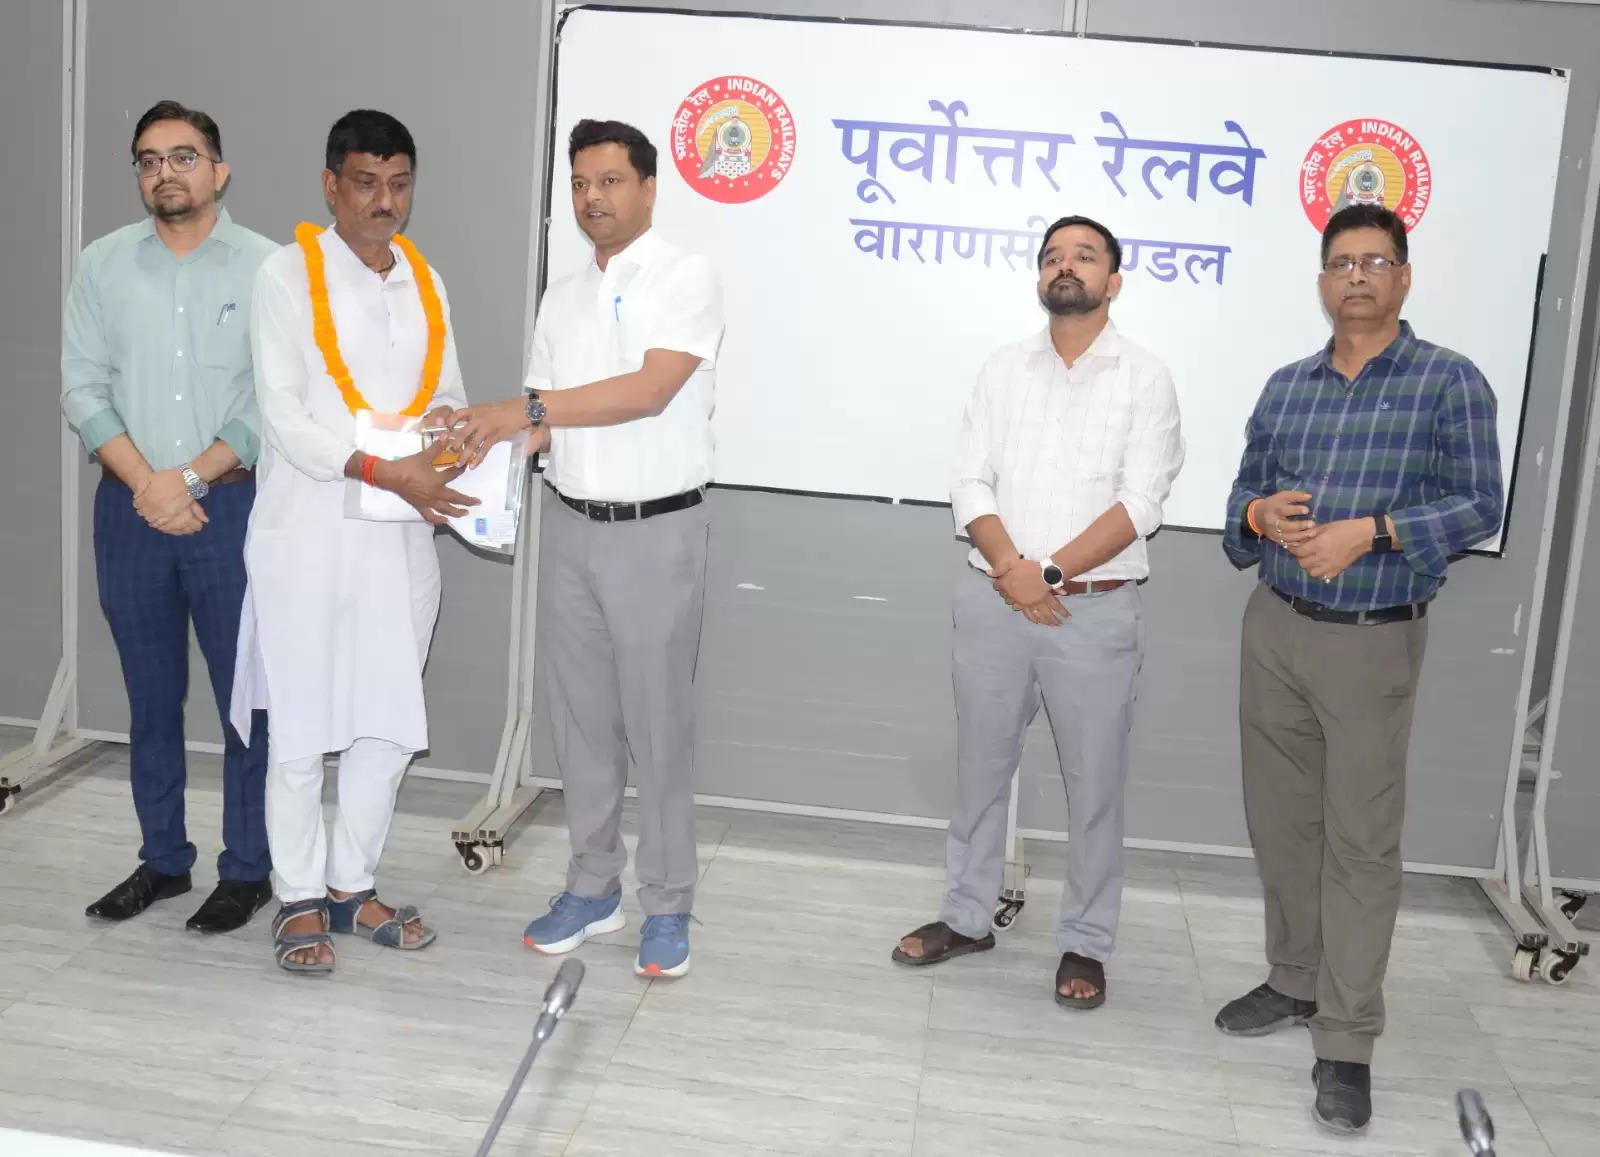 Varanasi News: बरेका में सेवानिवृत होने वाले 12 कर्मचारियों को मंडल रेल प्रबंधक कार्यालय सभागार में दी गयी धनराशि